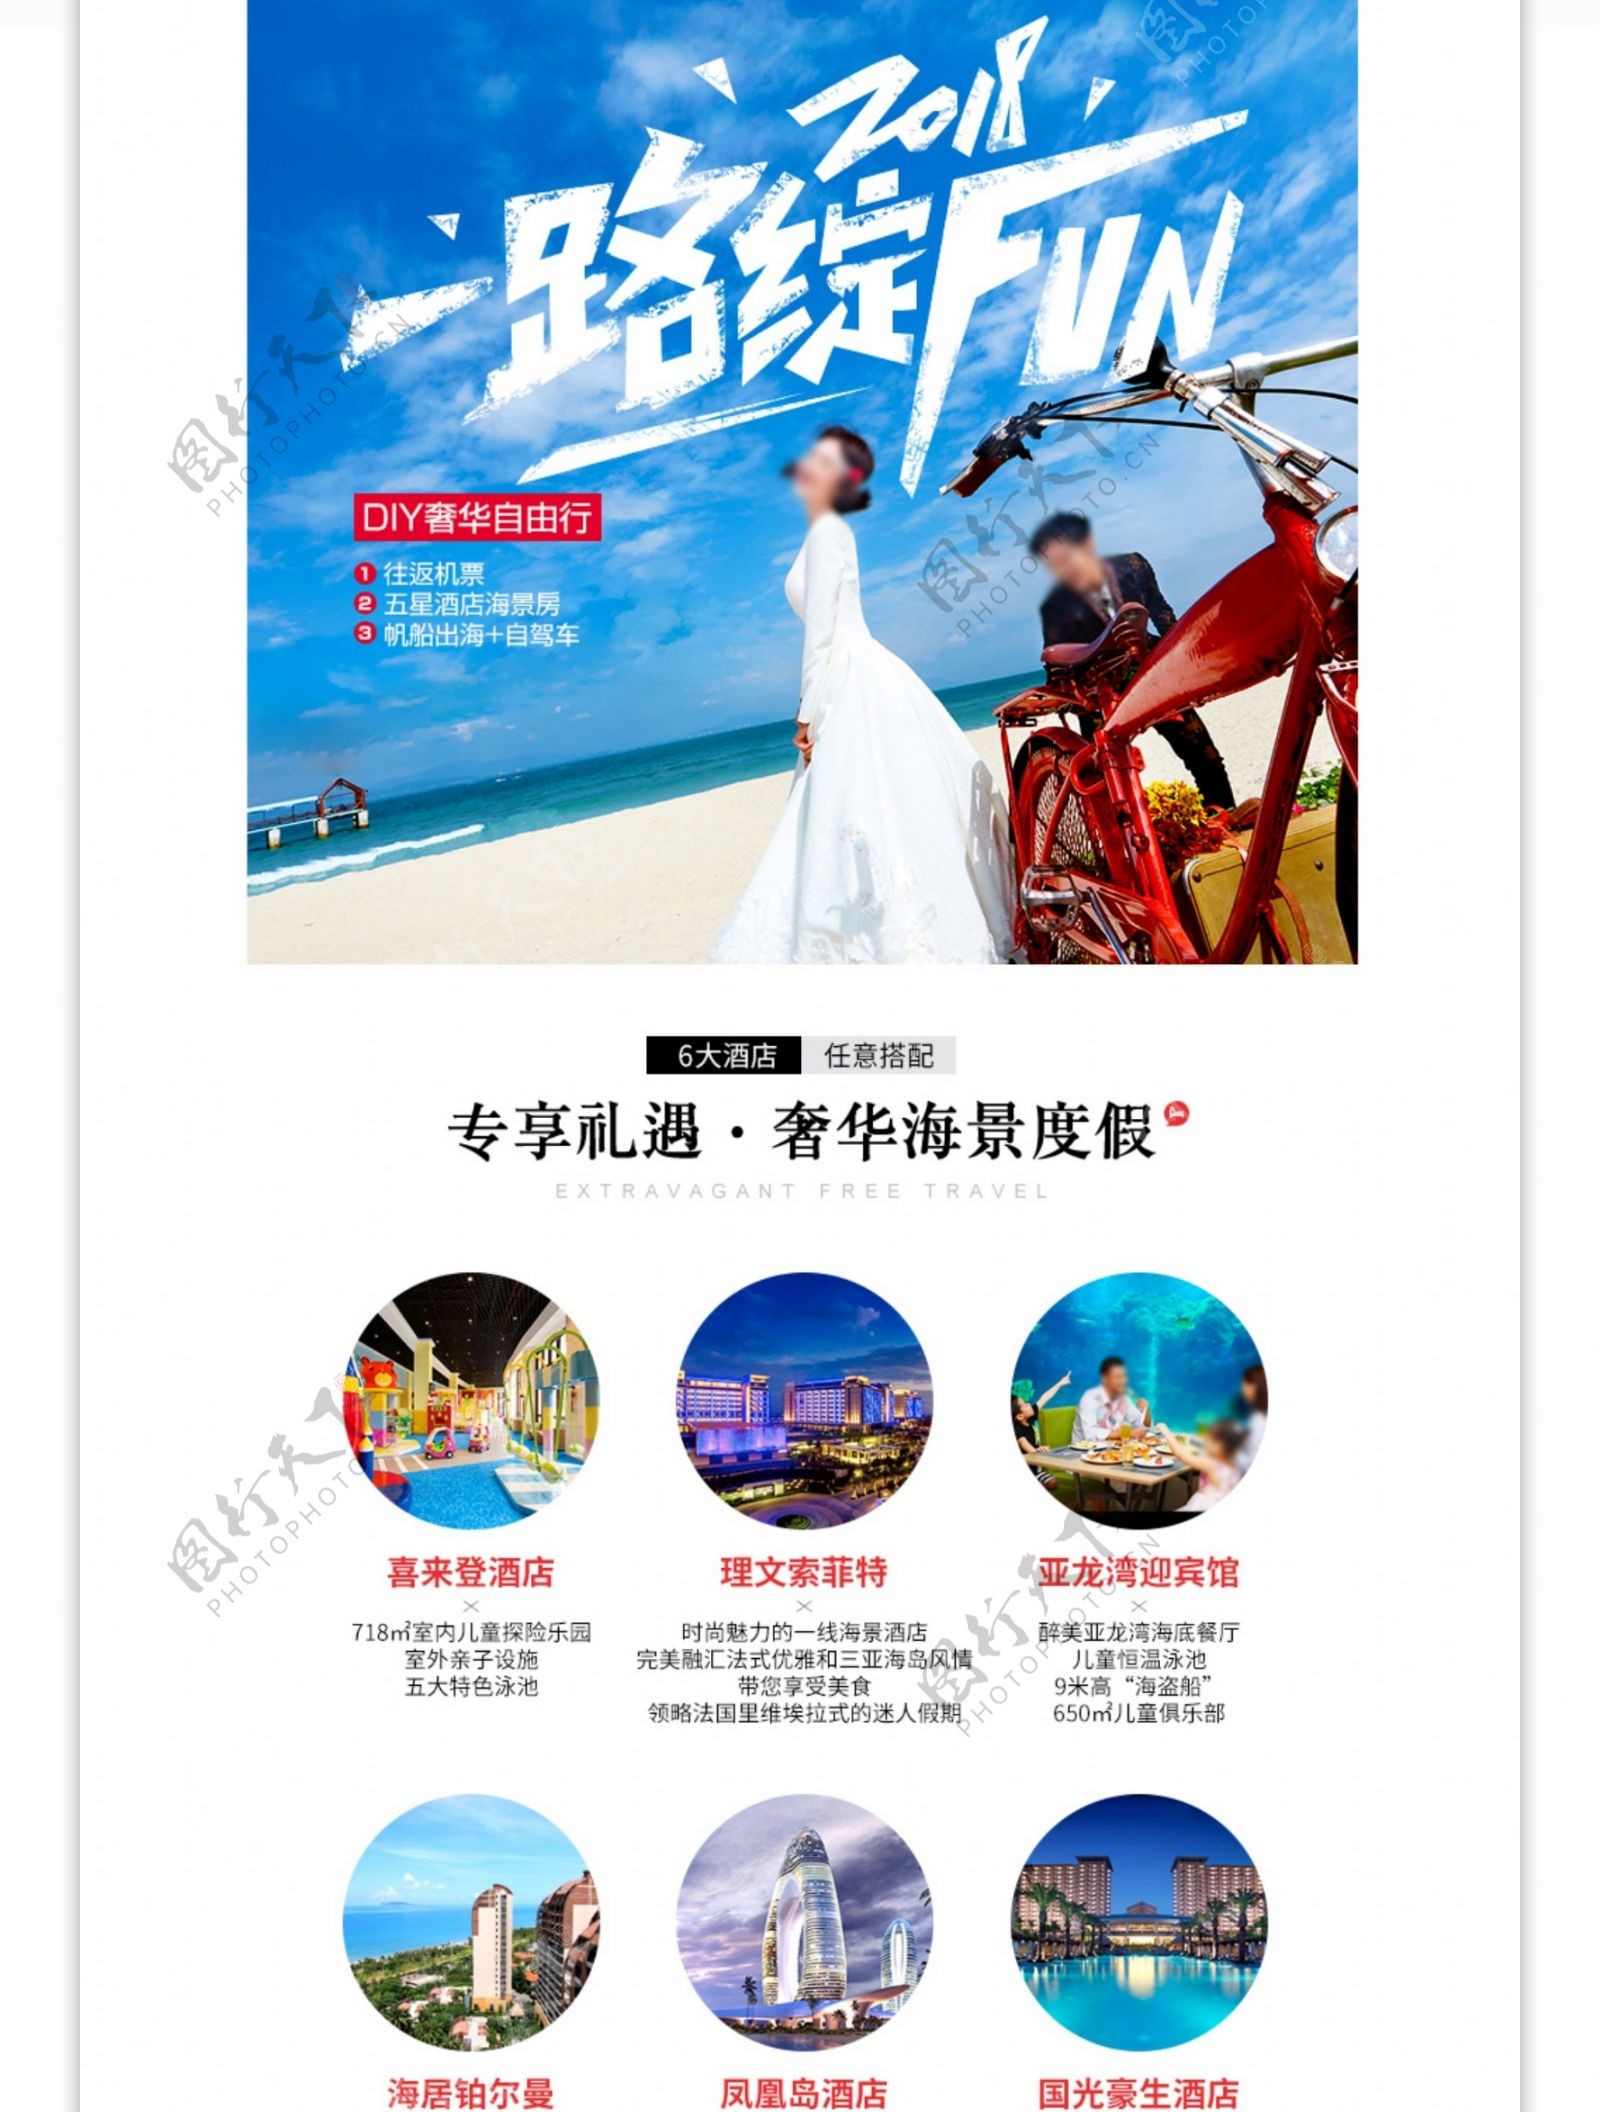 天猫淘宝三亚旅游旅行详情页模板